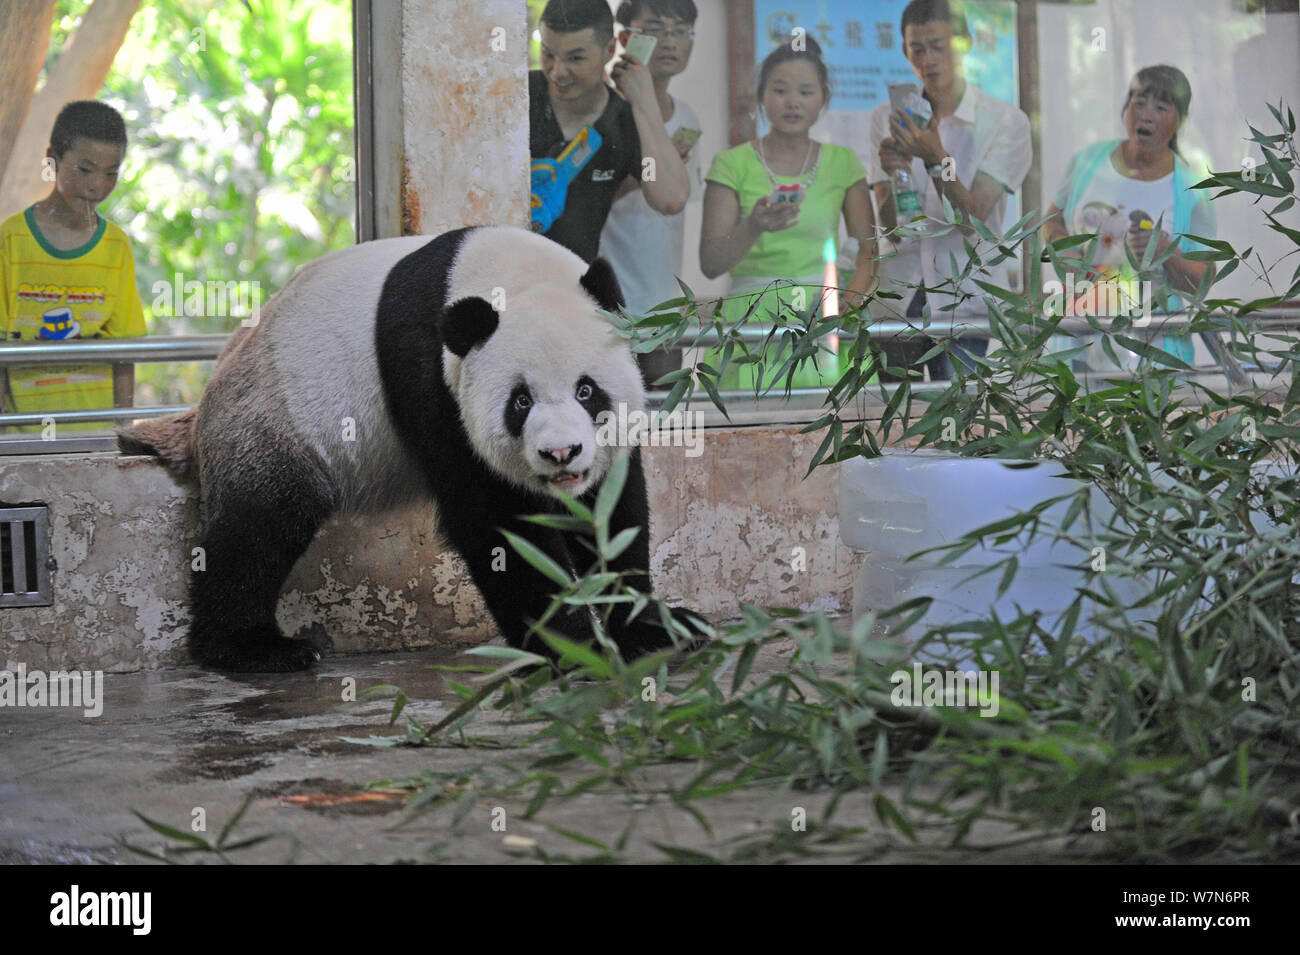 Panda gigante Weiwei come brotes de bambú alrededor de enormes bloques de hielo para refrescarse en una habitación con aire acondicionado en el Zoológico de la ciudad de Wuhan en Wuhan, China central de Hubei Foto de stock